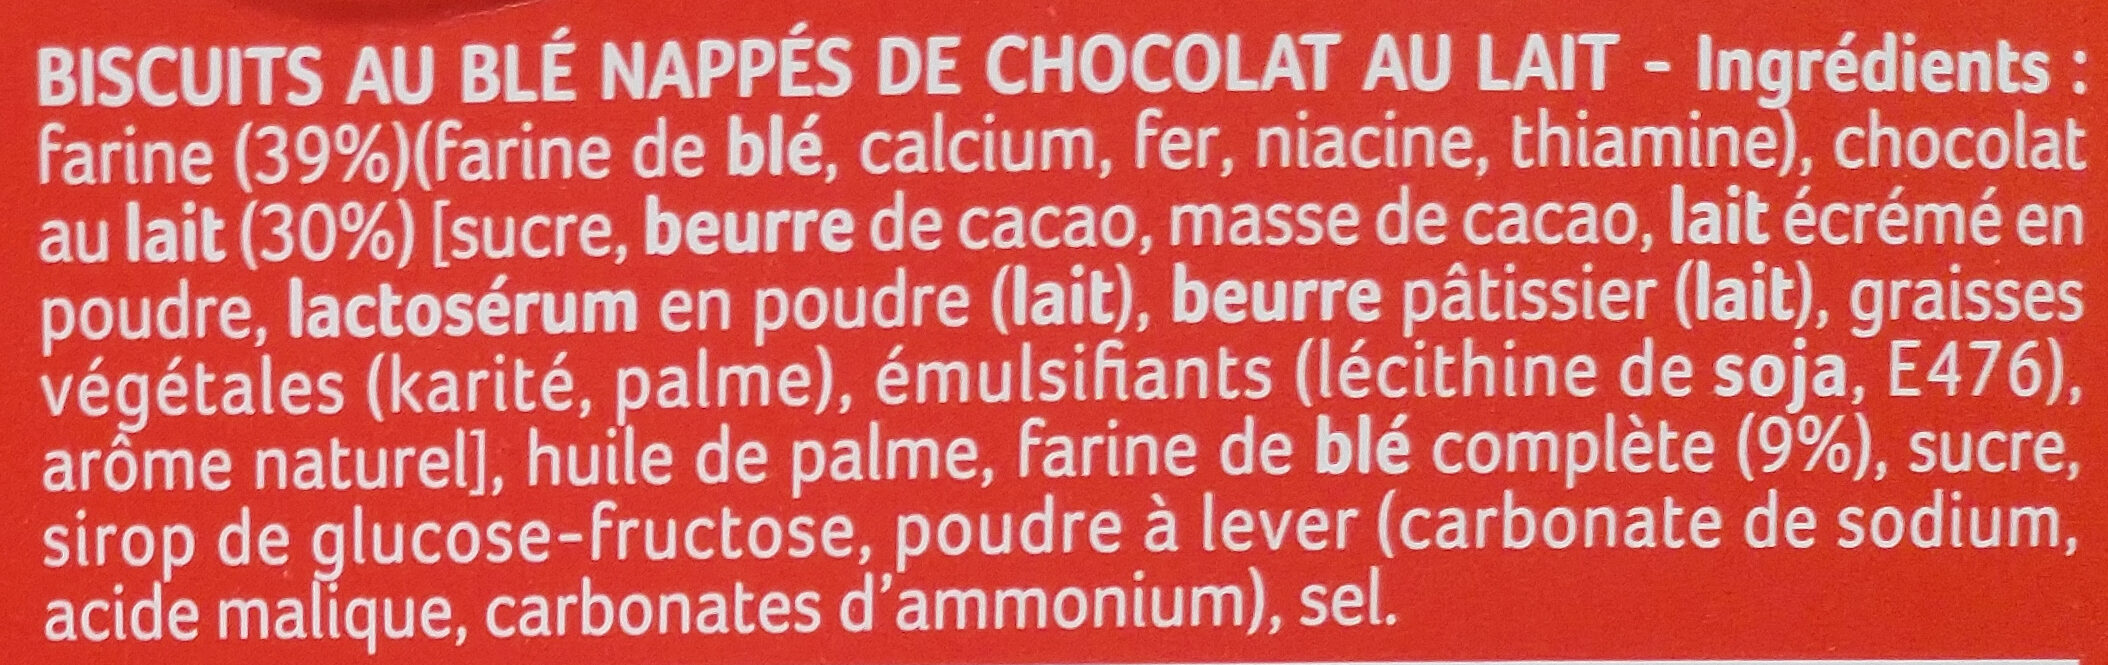 Sablés chocolat - Ingredients - fr